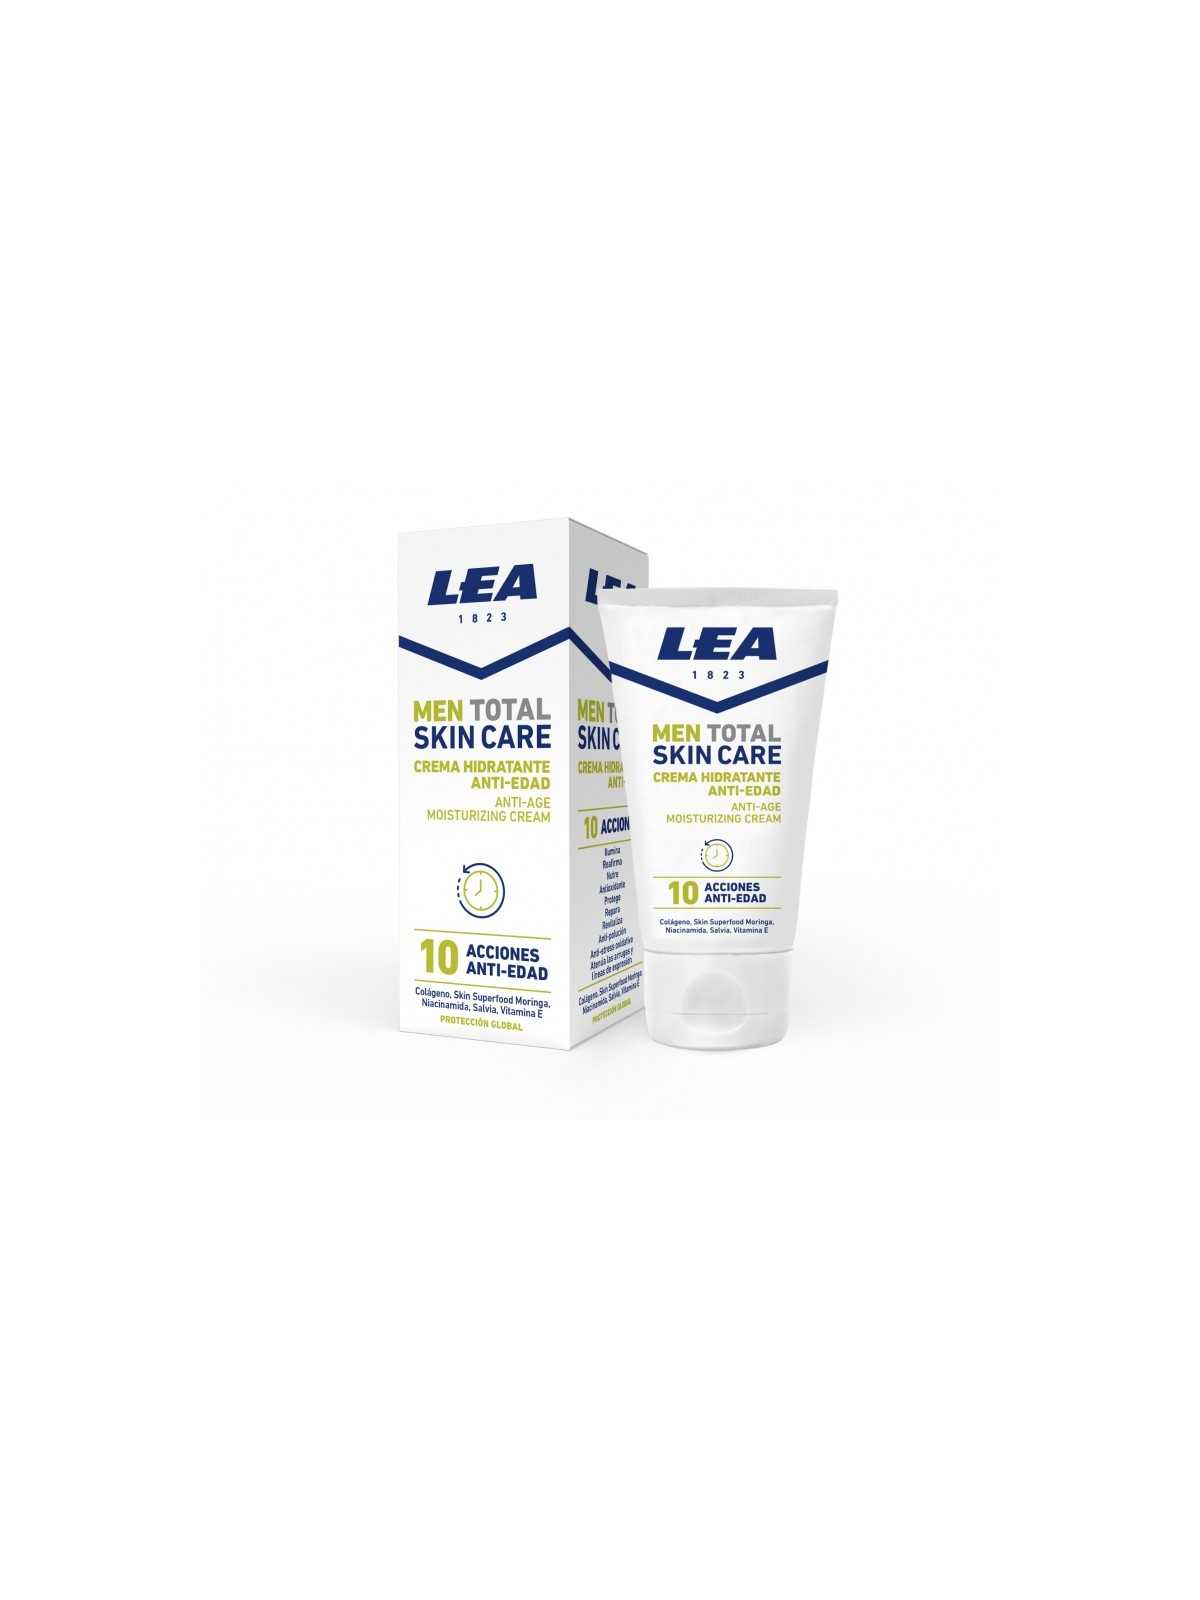 Comprar LEA men total skin care crema hidratante anti edad 50ml. en Inicio por sólo 6,50 € o un precio específico de 6,50 € en Thalie Care